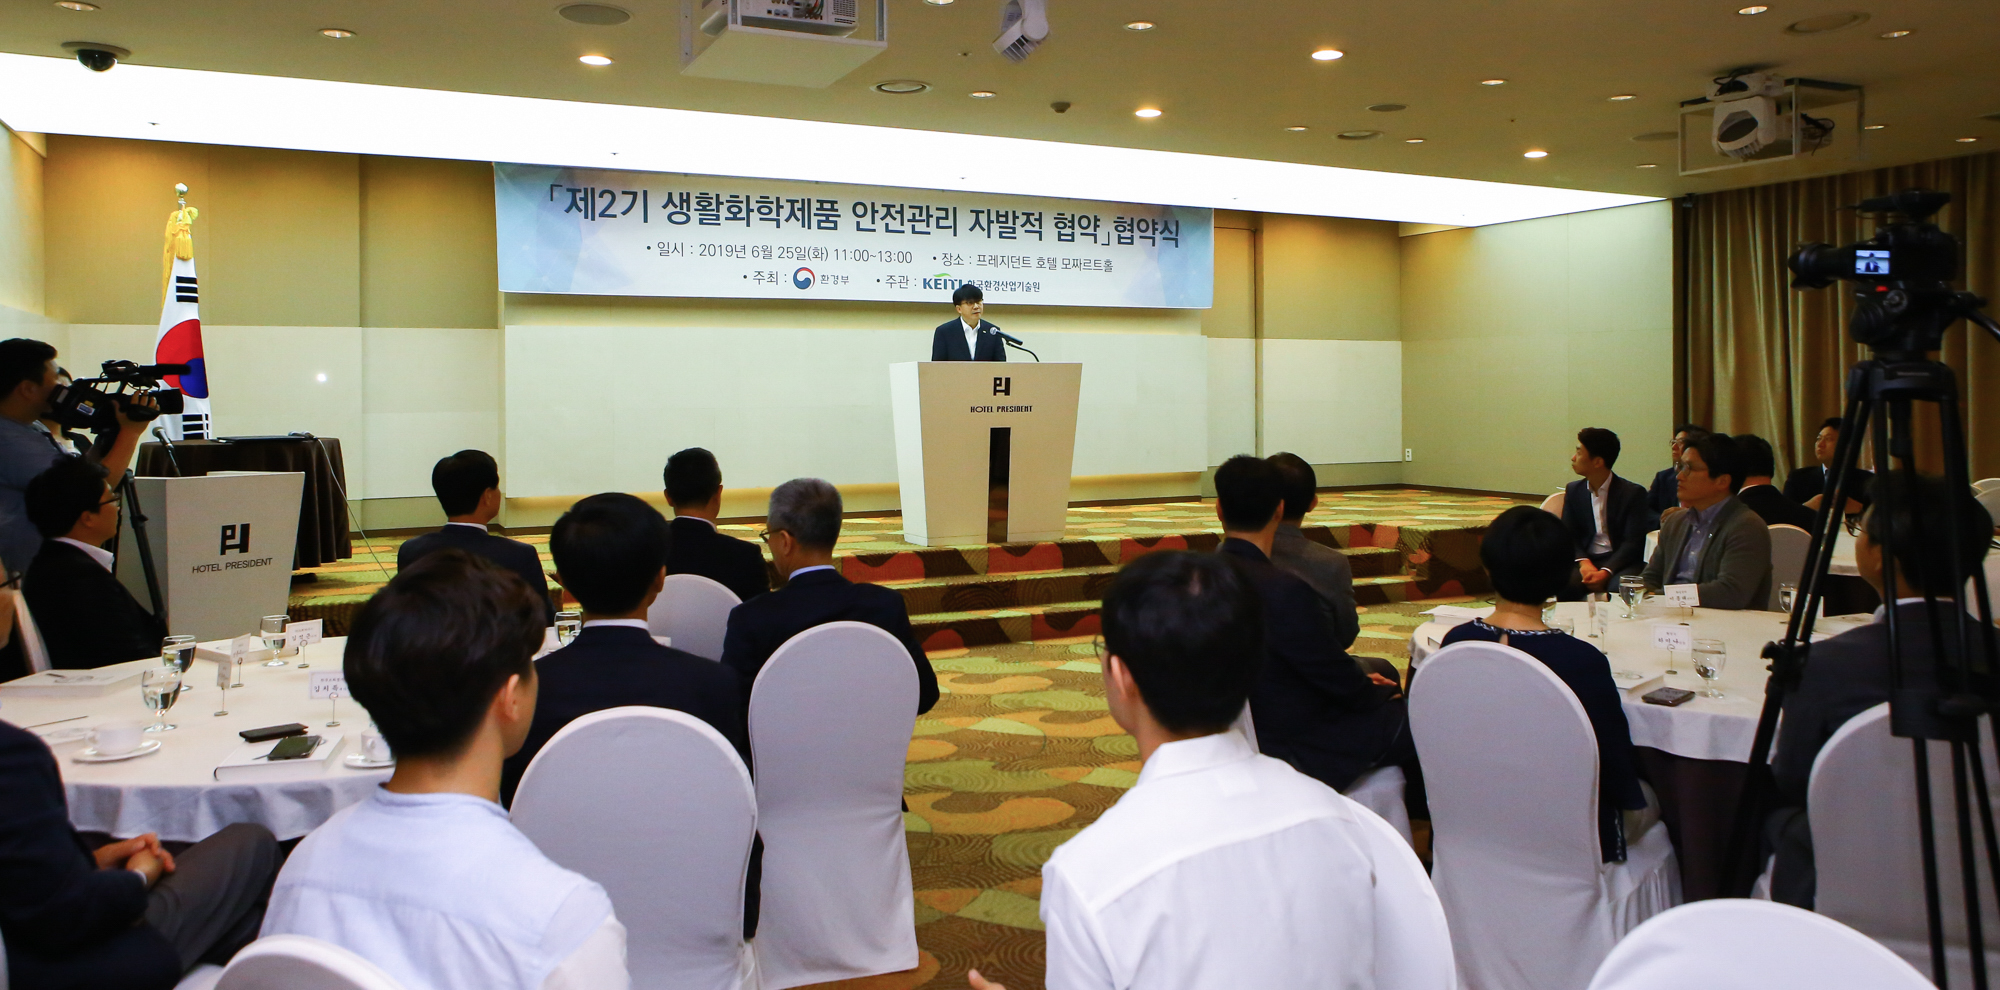 「제2기 생활화학제품 안전관리 자발적 협약」 협약식 개최